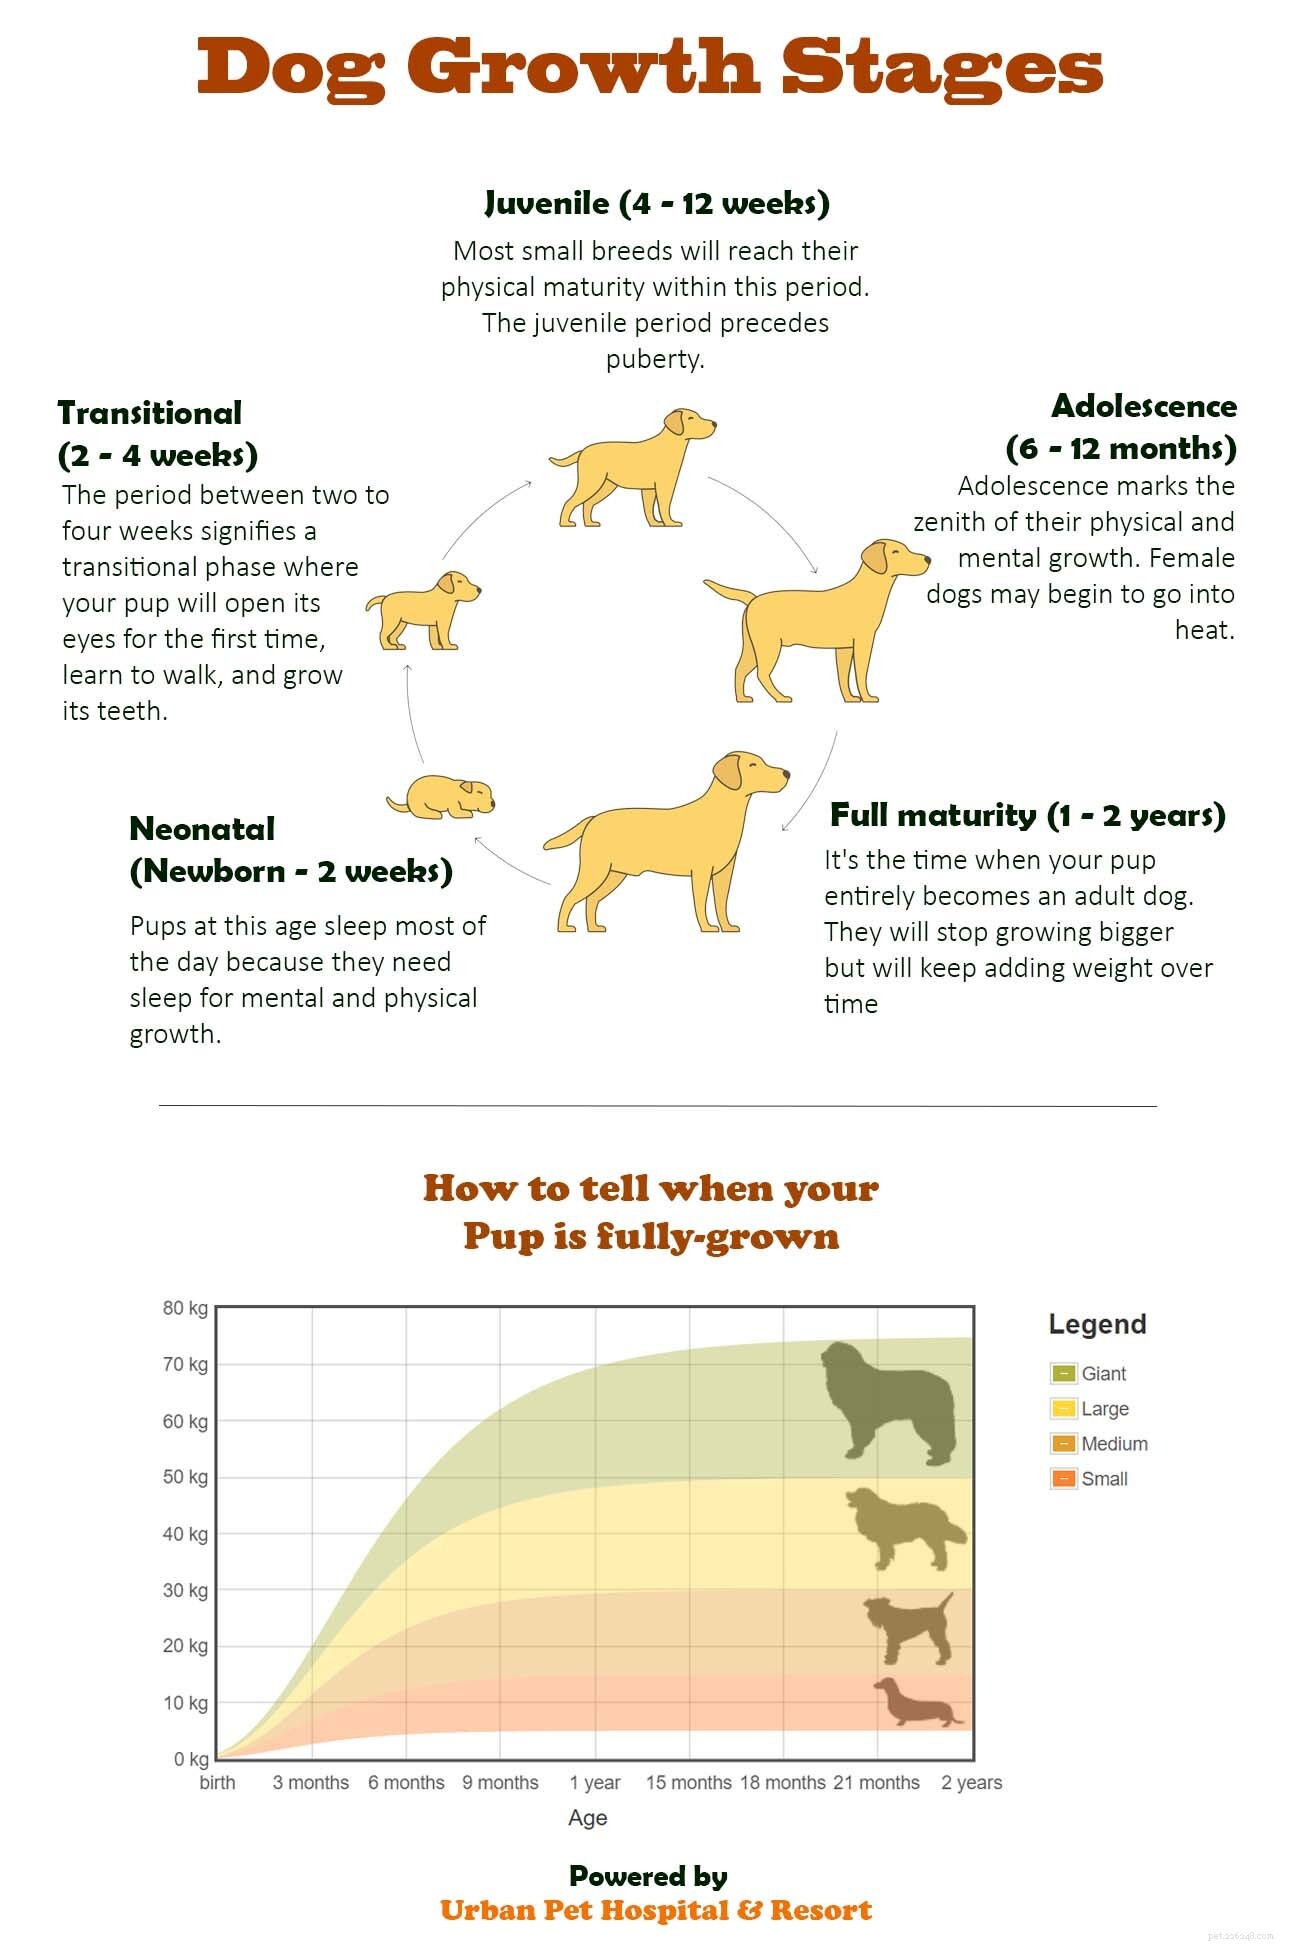 Op welke leeftijd stoppen honden met groeien?